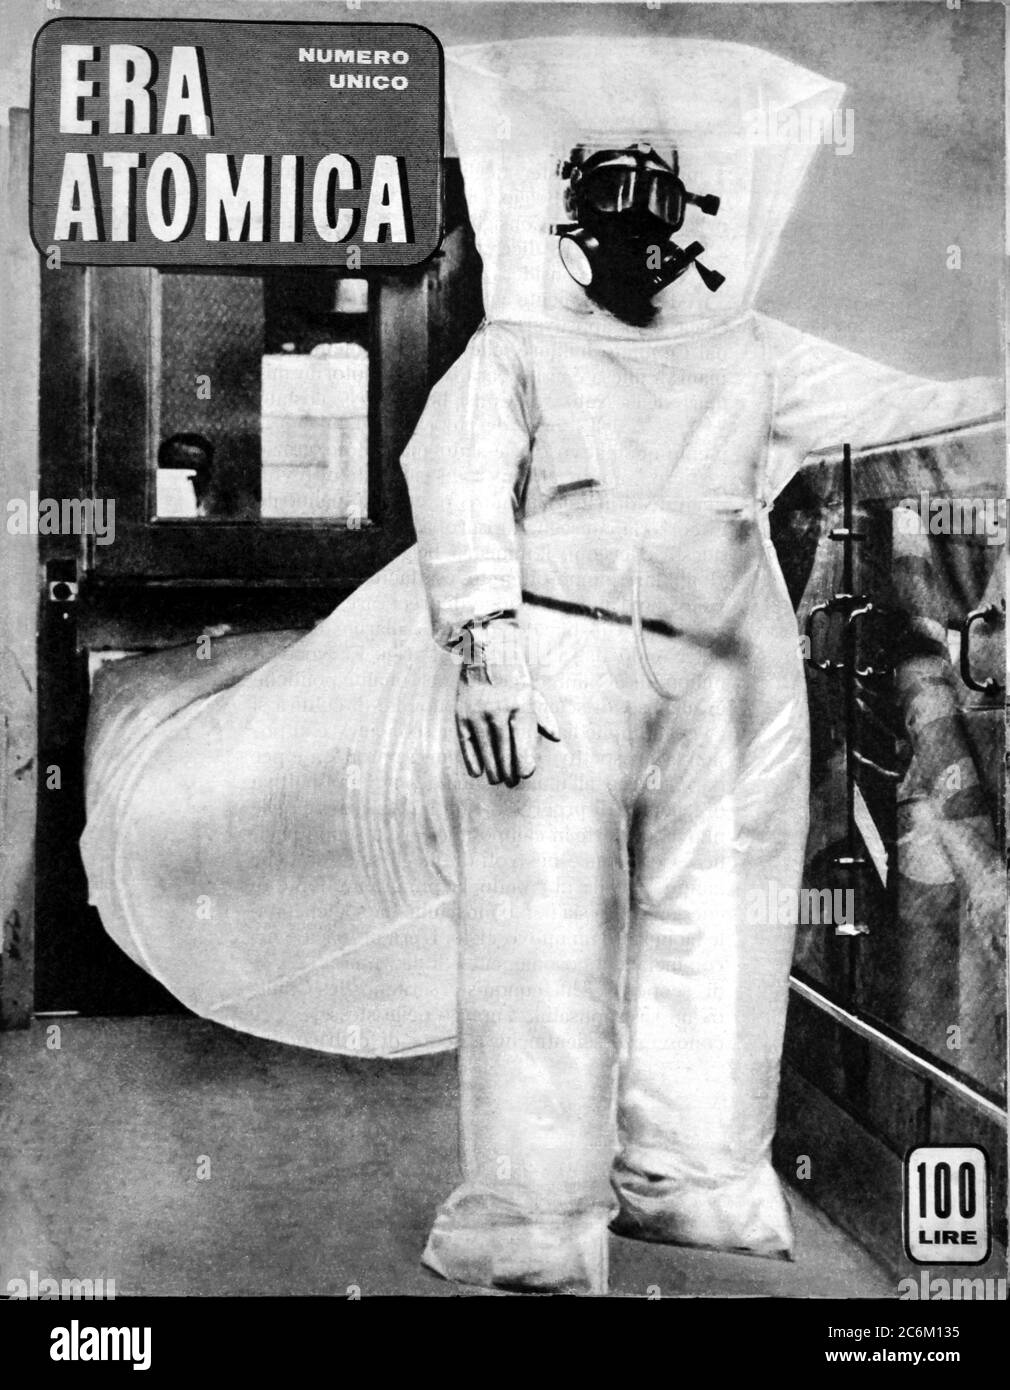 1955 , ITALIE : couverture du magazine illustré italien ERA ATOMICA ( ATOMICA ERA ) sur l'ÈRE atomique moderne de LA GUERRE FROIDE, pubblié par le magazine communiste italien il LAVORO ( du syndacate CGIL : Confederazione Generale Italiana del Lavoro ) pour le pacifisme et l'abandon de toute utilisation de l'énergie atomique pour la guerre. - PACE - PACIFISMO - ENERGIA ATOMICA - ENERGIE - GUERRA FREDDA - ATTACCO ATOMICO NUCLEARE ENERGIA - ENERGIE - ATTAQUE NUCLÉAIRE - BOMBA ATOMICA - FOTO STORICHE STORICA - PHOTOS D'HISTOIRE - BOMBE - GUERRA FREDDA - GUERRE FROIDE - ATOMO - ENERGIA NUCLEARE - ARME NUCLÉAIRE - FONO atomico - radioattività Banque D'Images